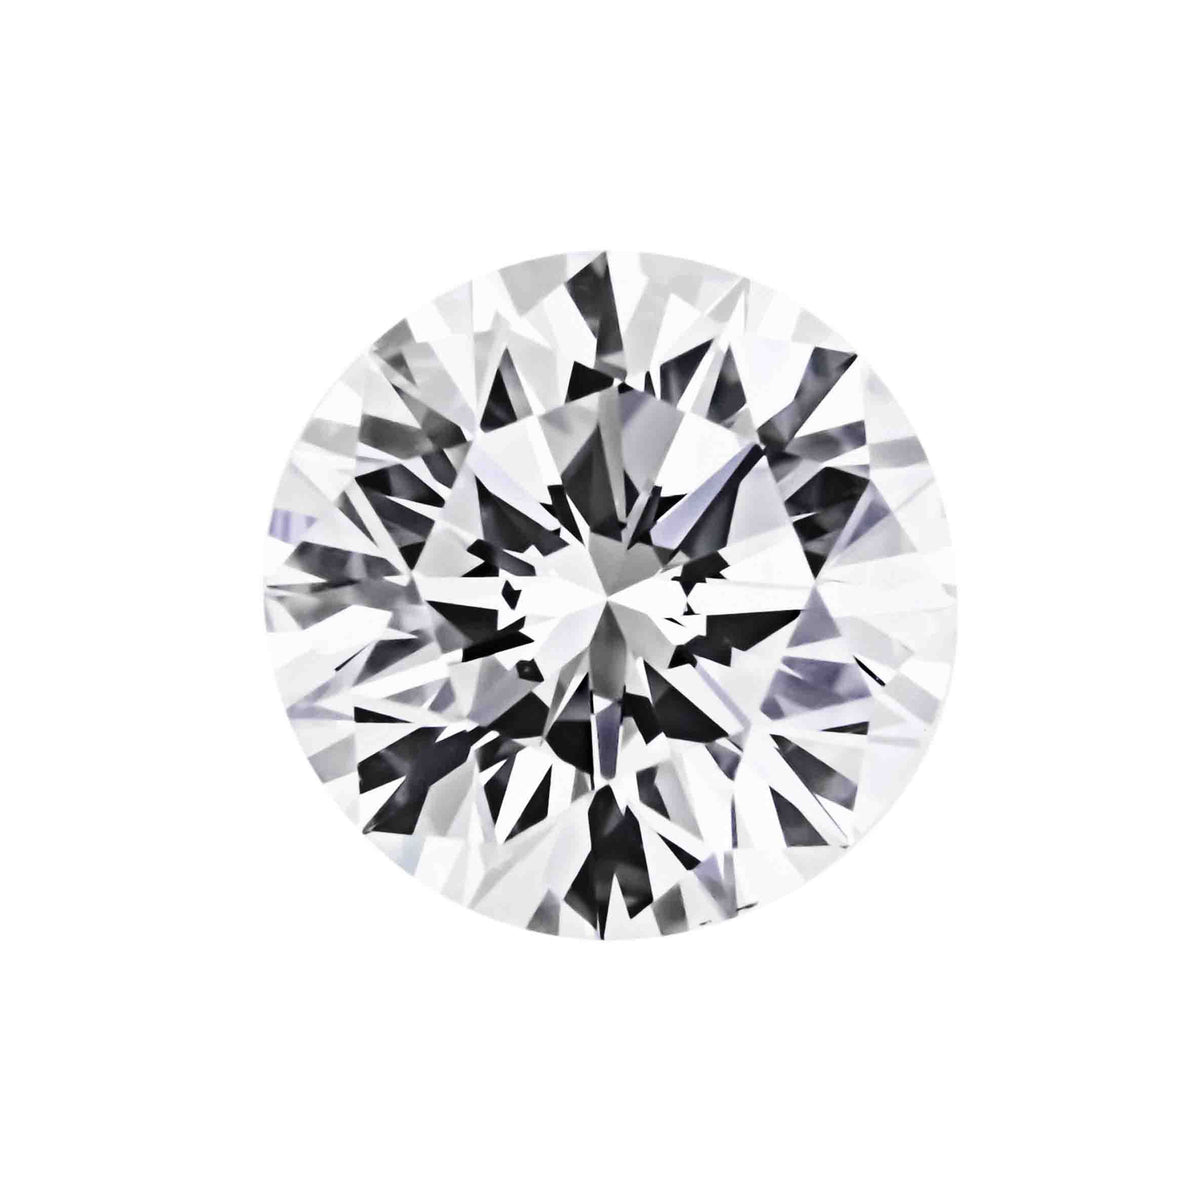 1.00 Carat Round Cut Diamond Hybrid